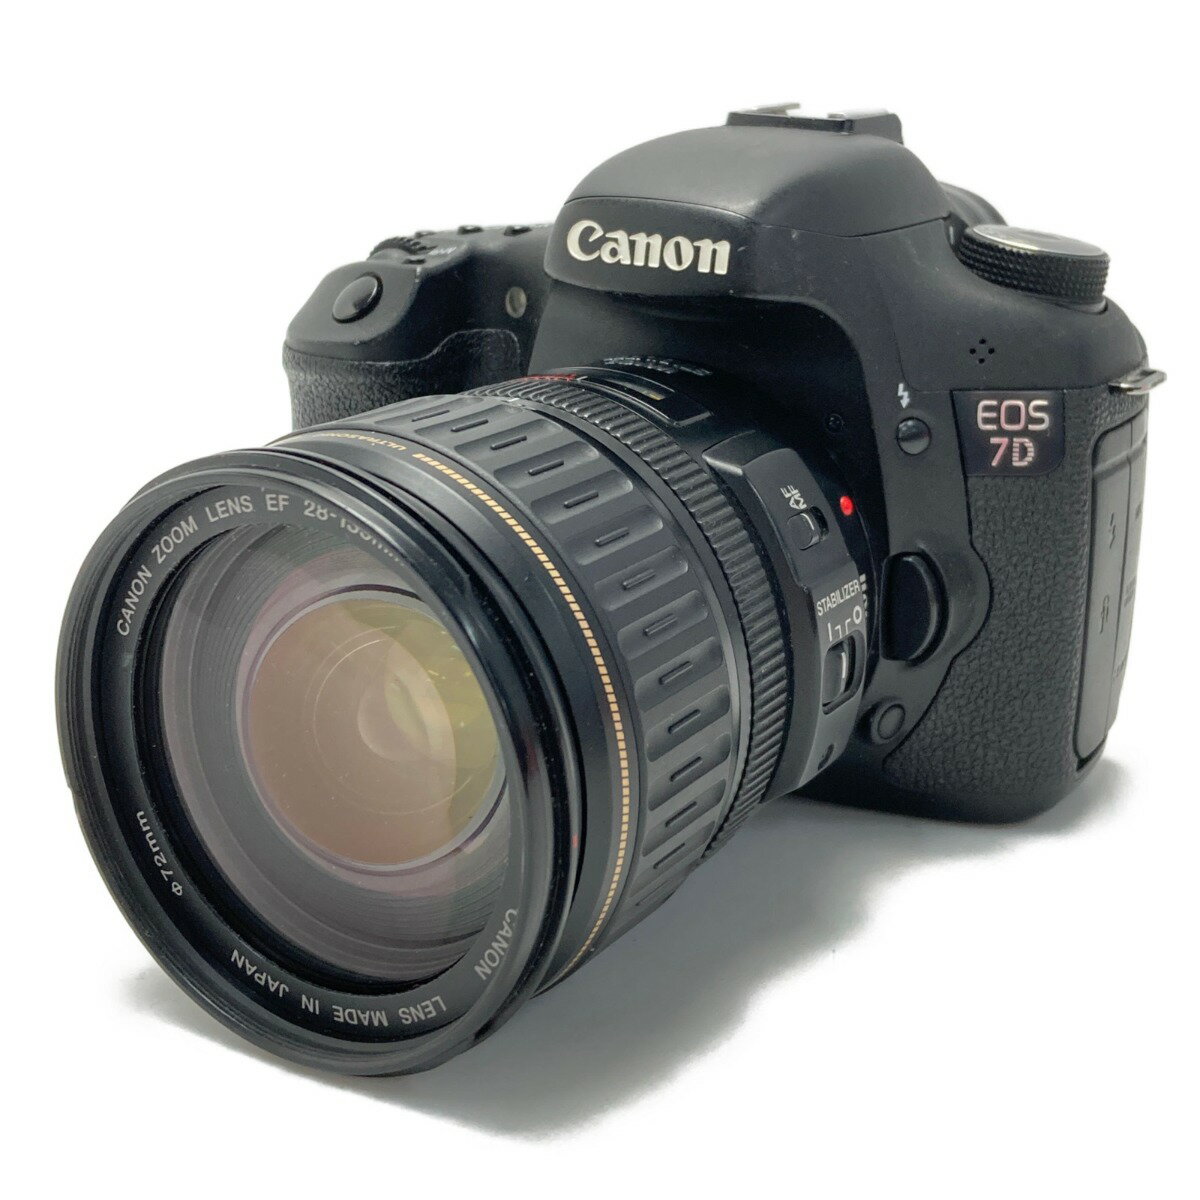 ☆☆【中古】CANON キャノン EOS 7D ＋ ウルトラソニック 28-135mm 1:3.5-5.6 IS デジタル一眼レフカメラ Bランク